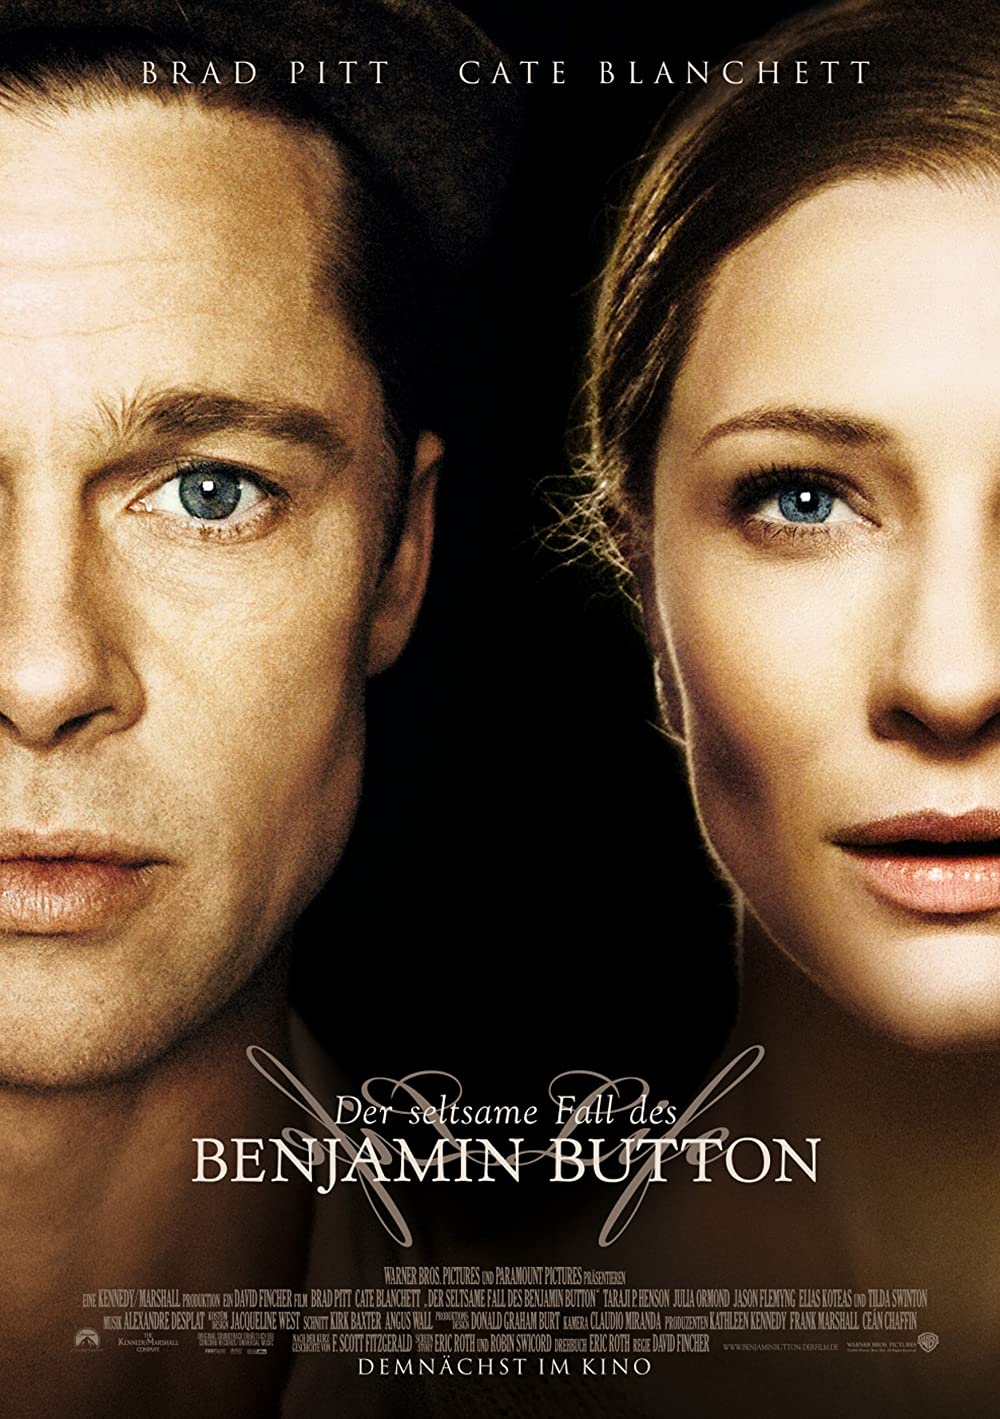 Filmbeschreibung zu The Curious Case of Benjamin Button